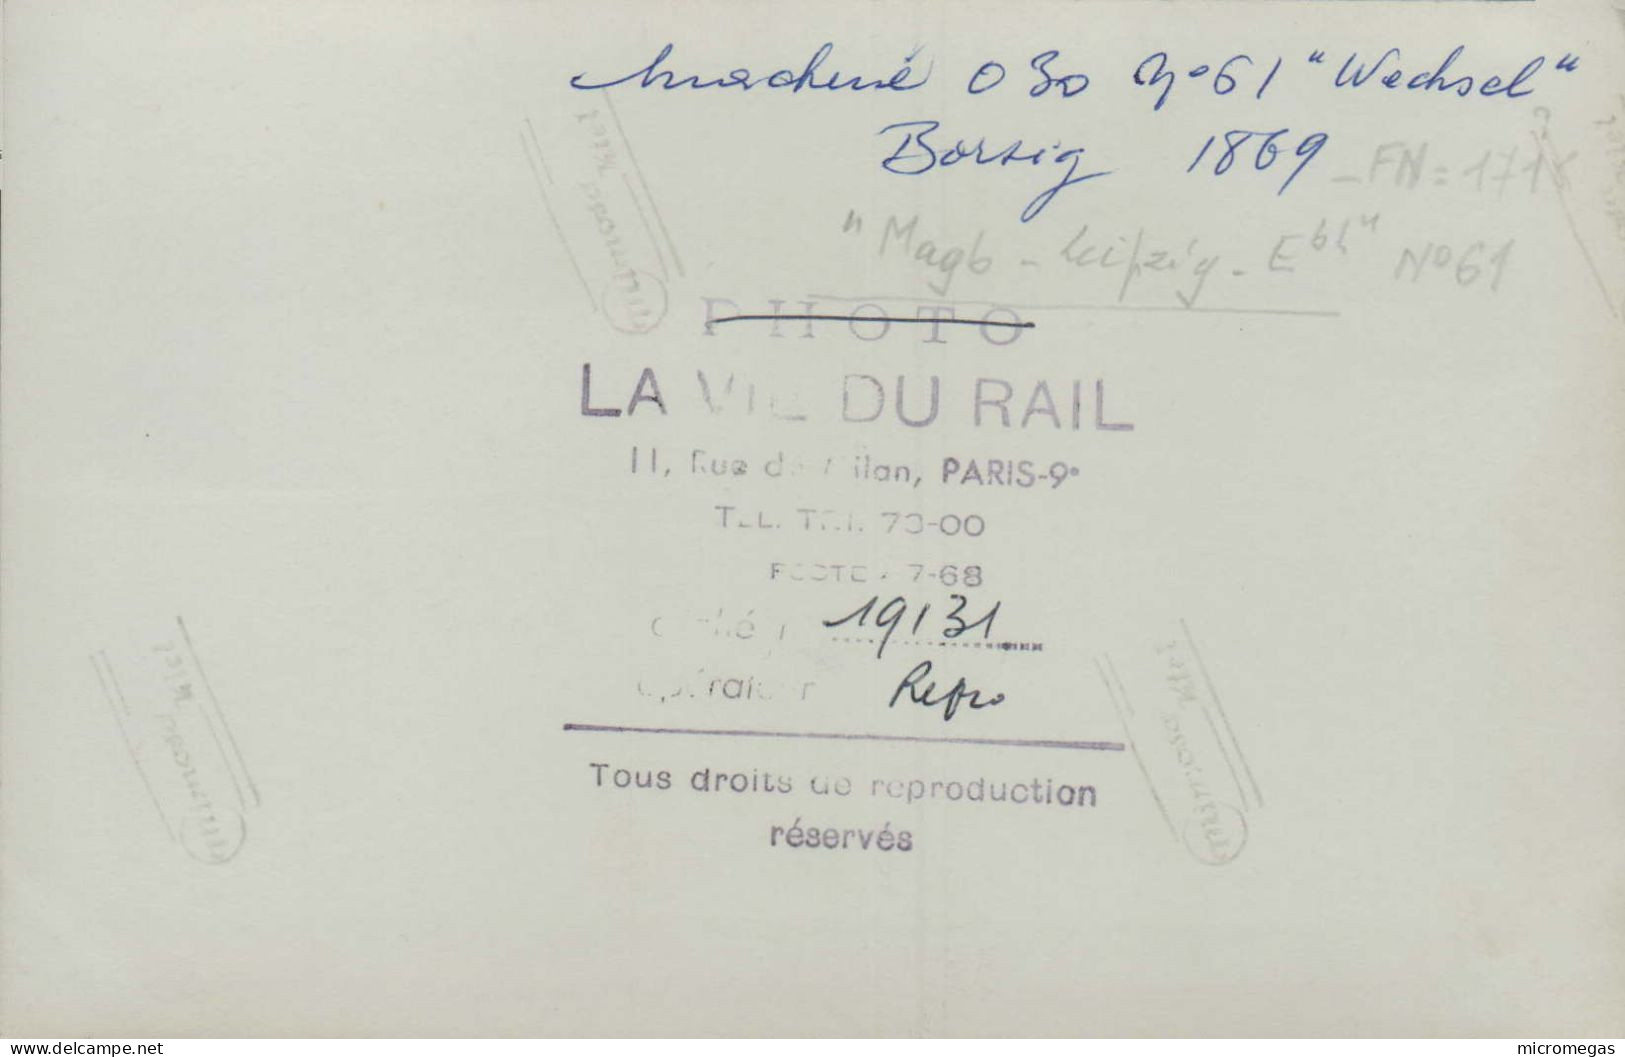 Reproduction "La Vie Du Rail" - Machine 030 N° 61 "Wechsel", Borsig 1869 - Trains